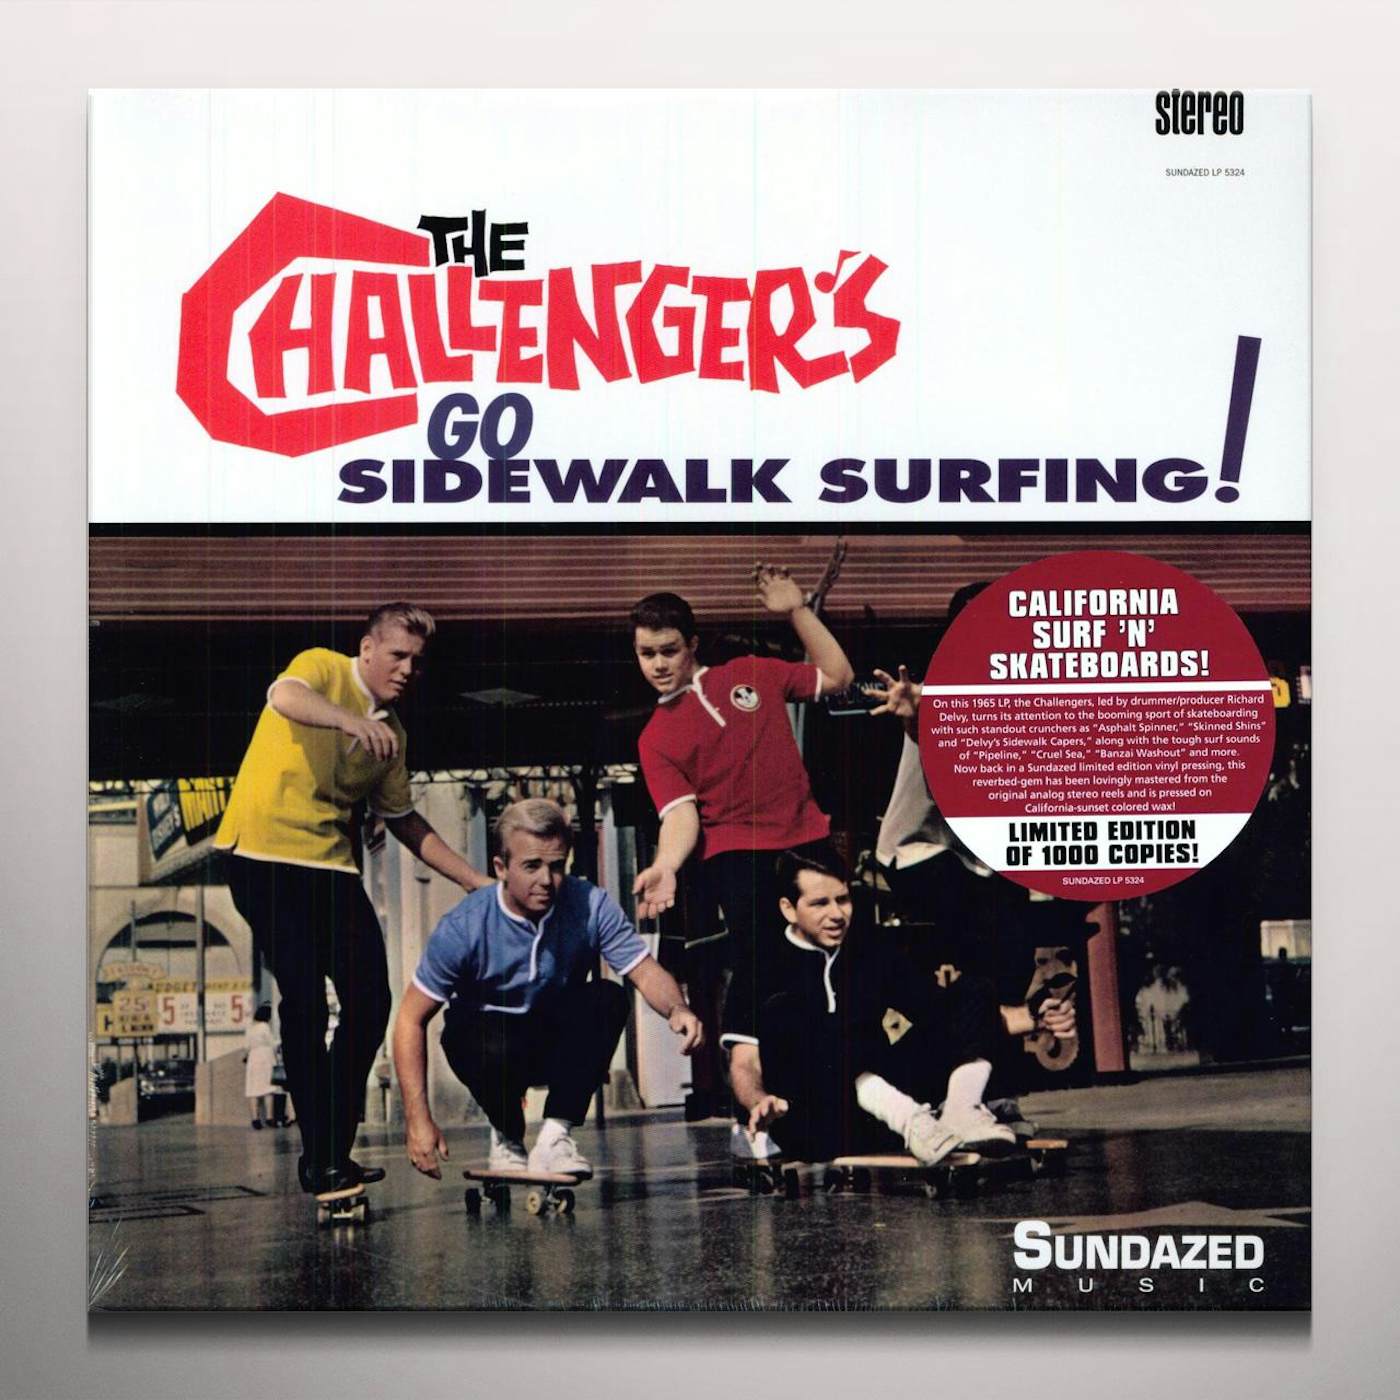 The Challengers GO SIDEWALK SURFING Vinyl Record